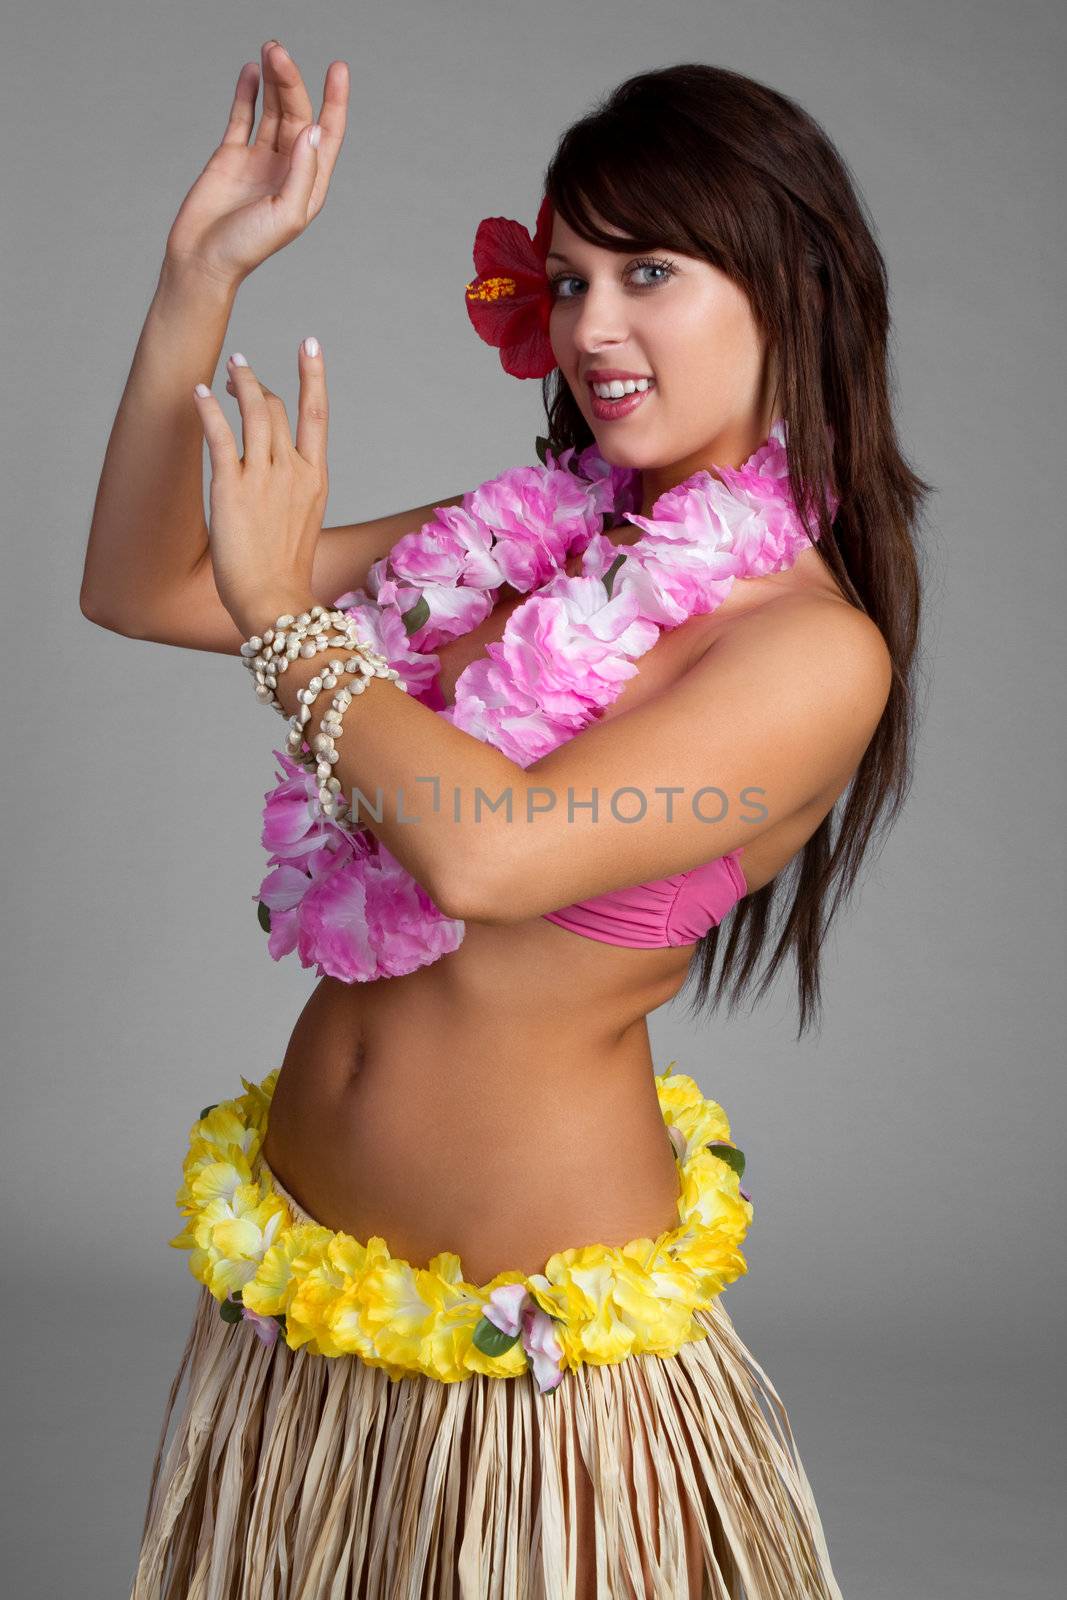 Hawaiian Hula Dancer by keeweeboy